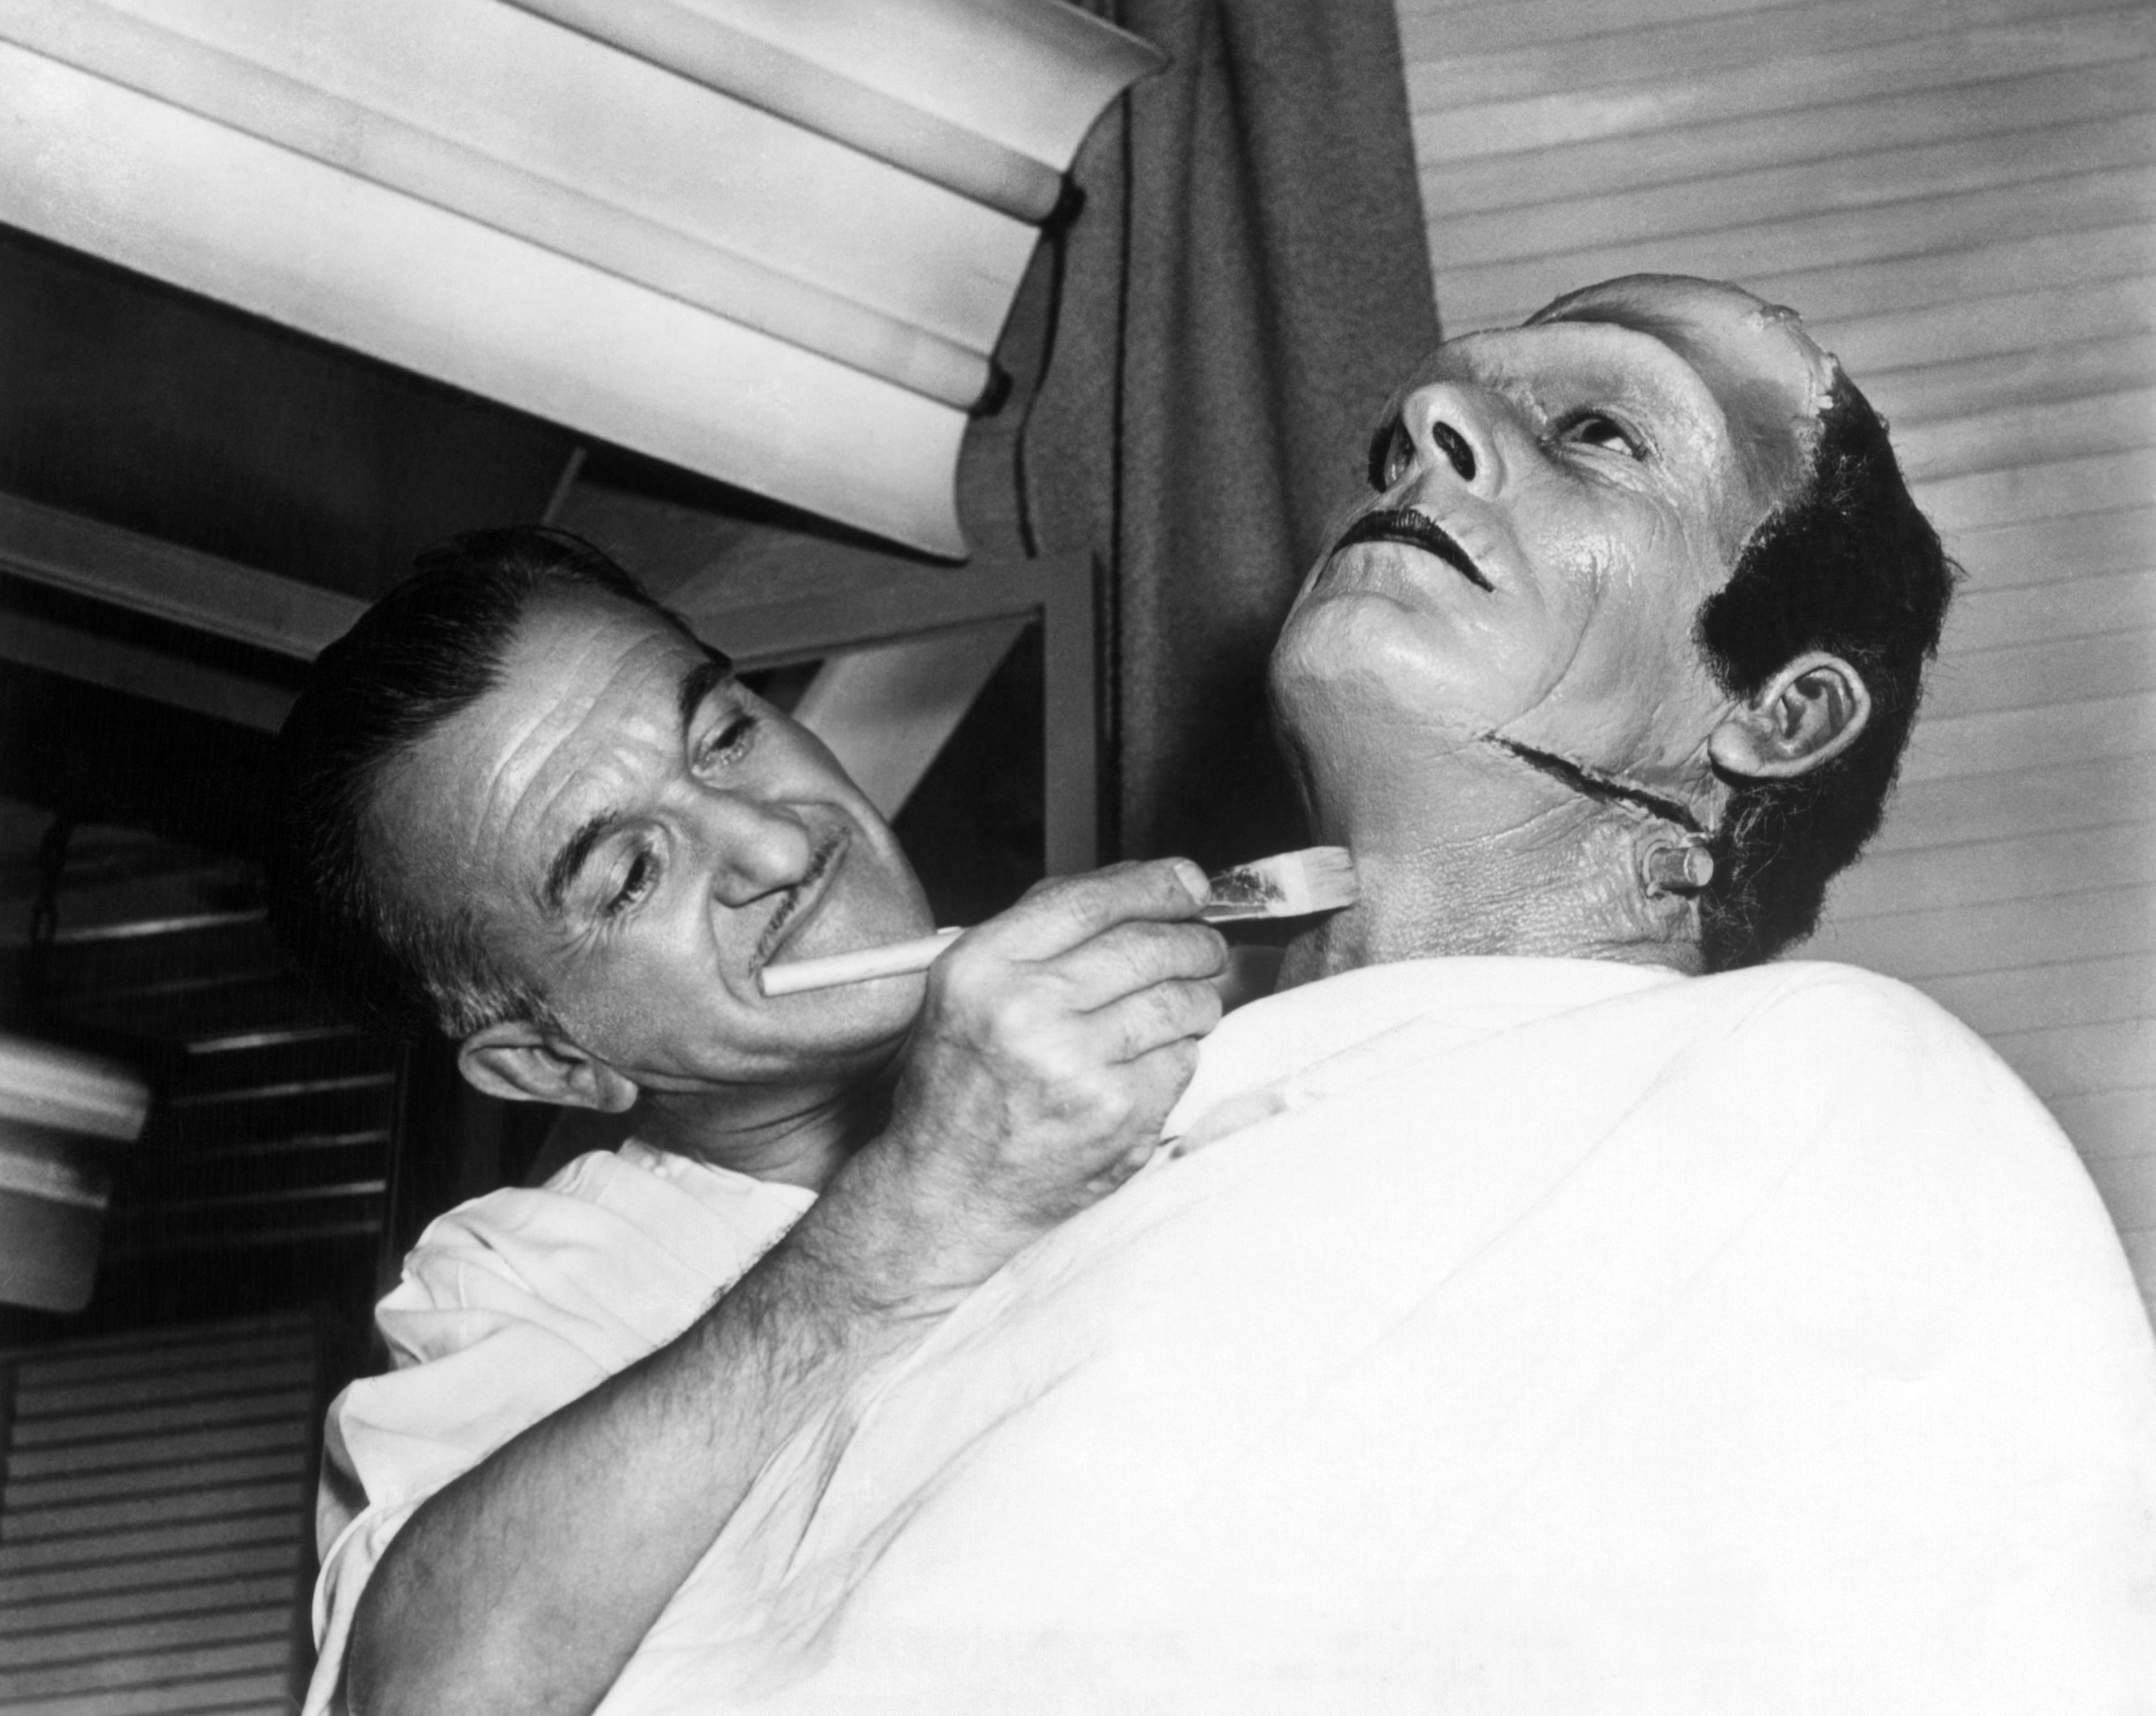 makeup artist Jack P. Pierce turning Glenn Strange into the &#x27;Frankenstein monster&#x27;